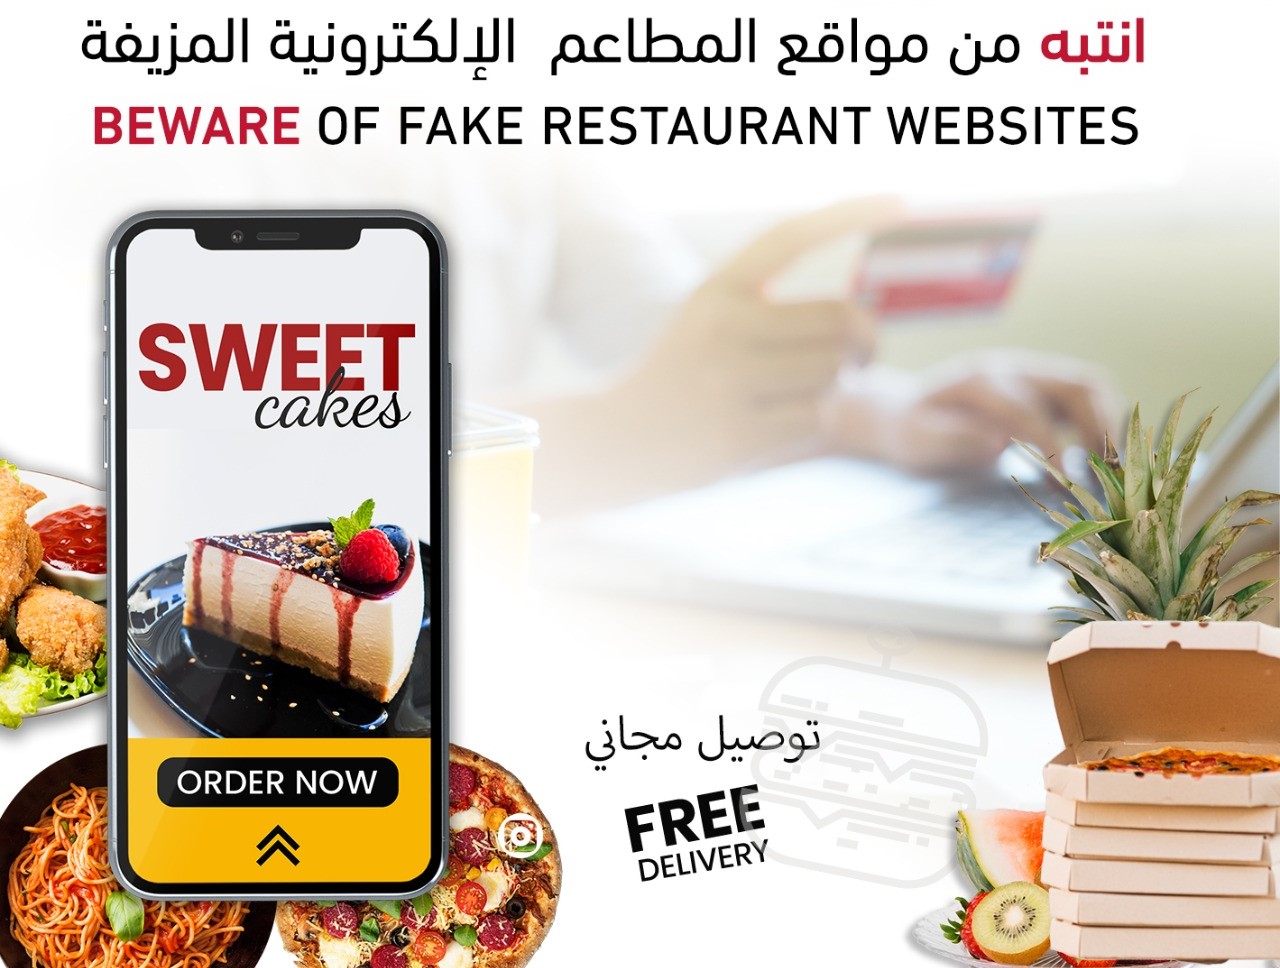 شرطة أبوظبي تحذر من مواقع انترنت احتيالية وهمية لمطاعم ومحال مشهورة